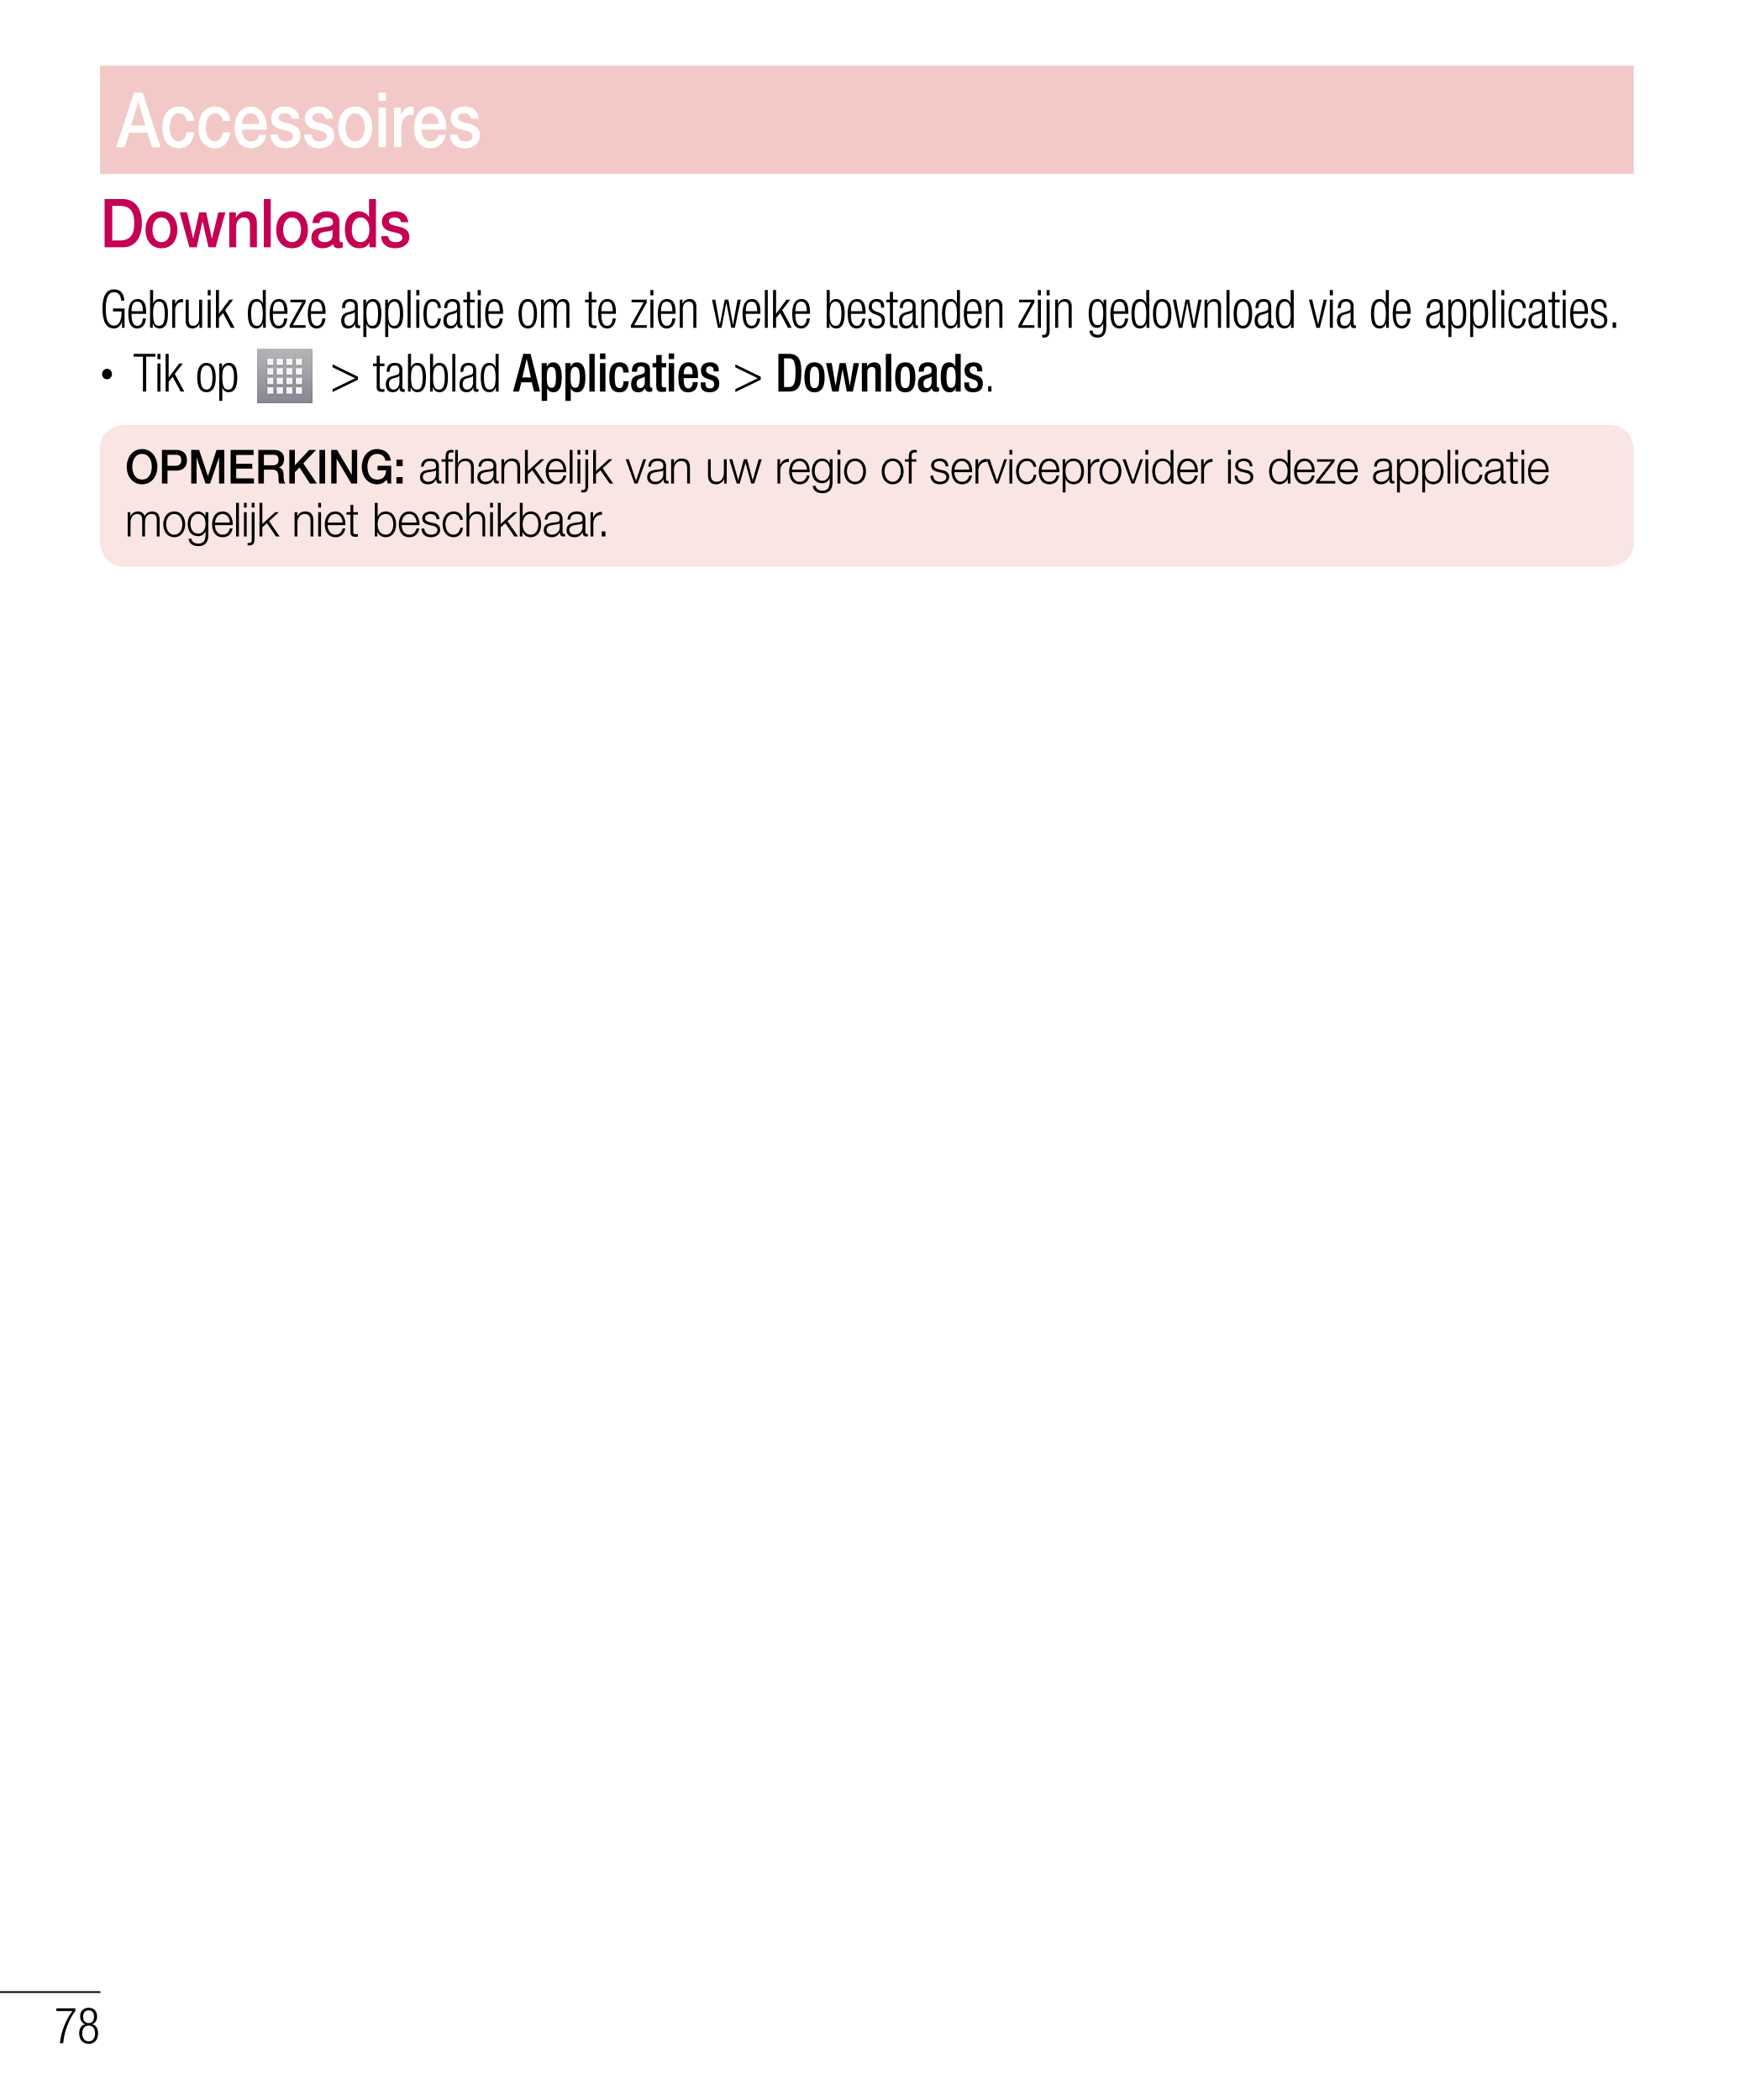 Accessoires
Downloads
Gebruik deze applicatie om te zien welke bestanden zijn gedownload via de applicaties.
•  Tik op   > tabbl